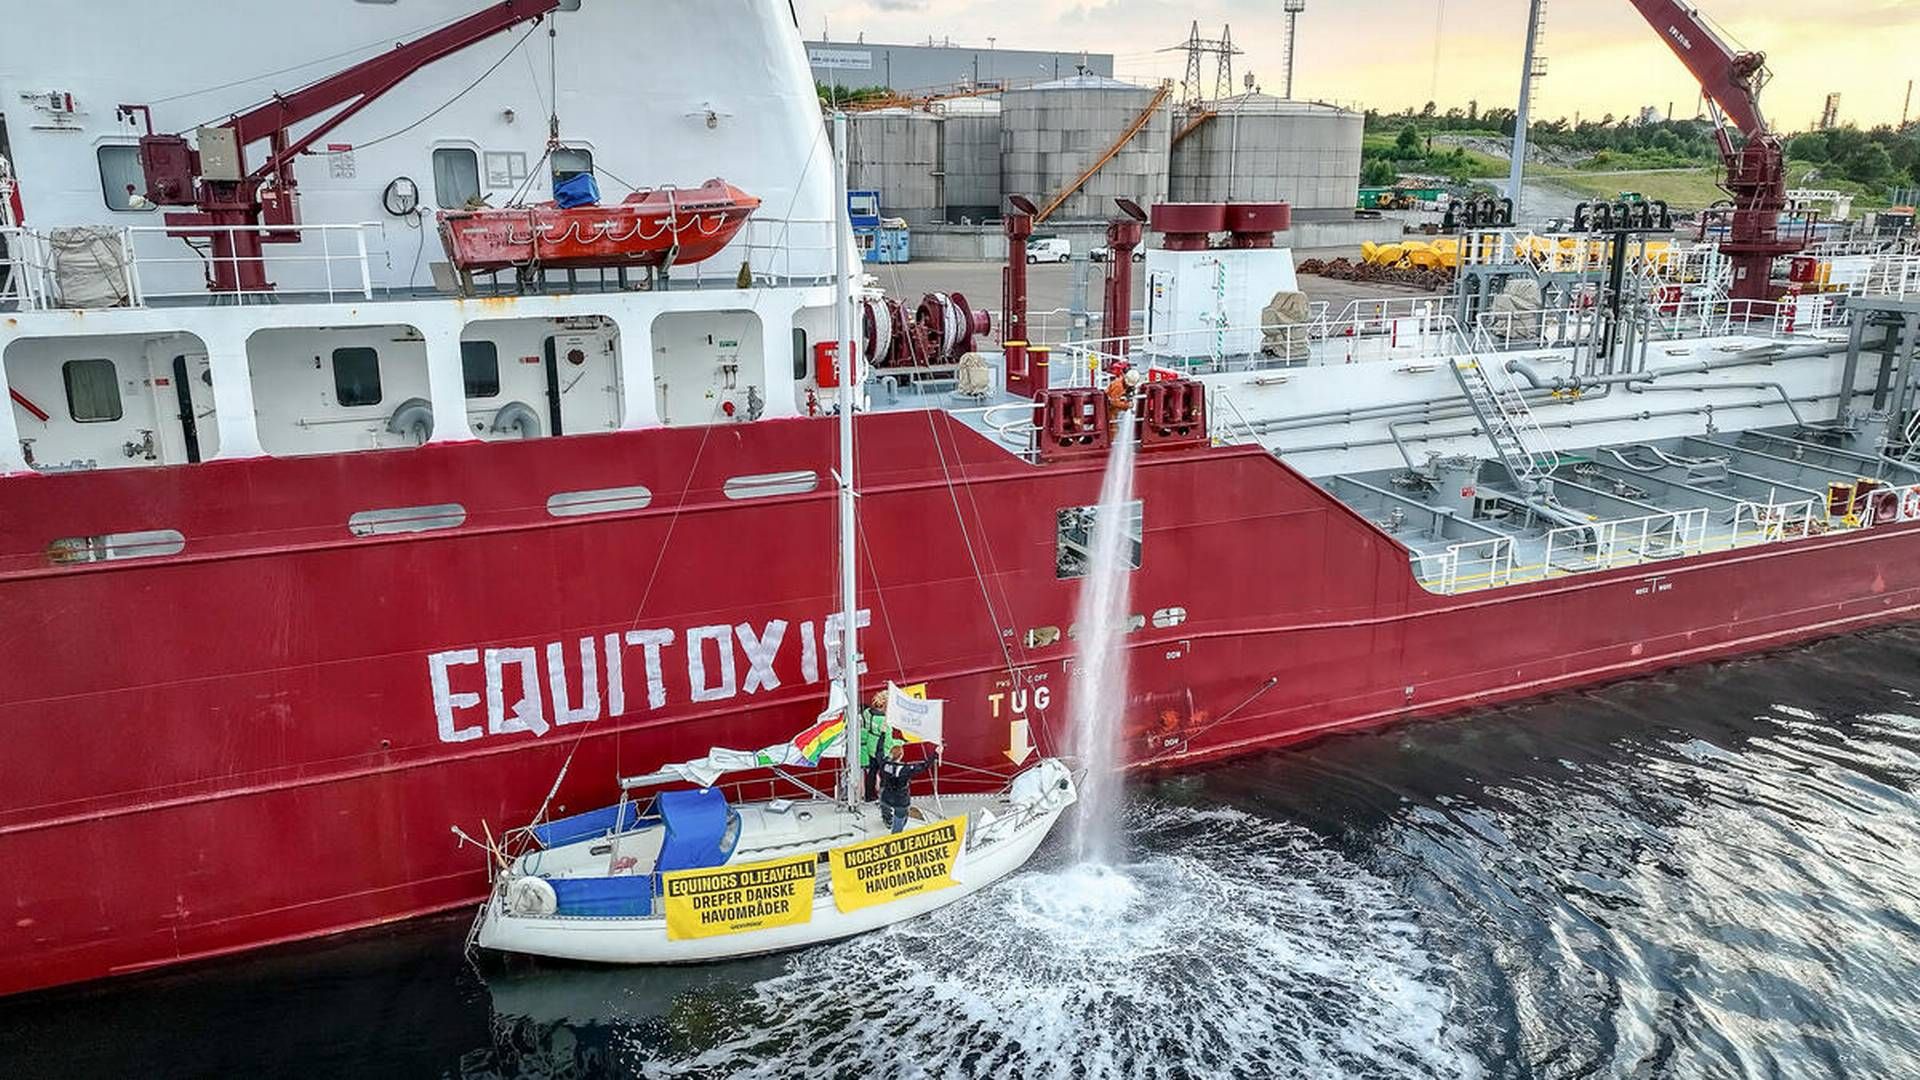 I 69 timer har fire aktivister fra Grrenpeace forhindret kemikalieskibet i at sejle op mod 9.000 ton giftigt norsk oliespildevand til delvis rensning og udledning i Danmark. | Foto: Greenpeace